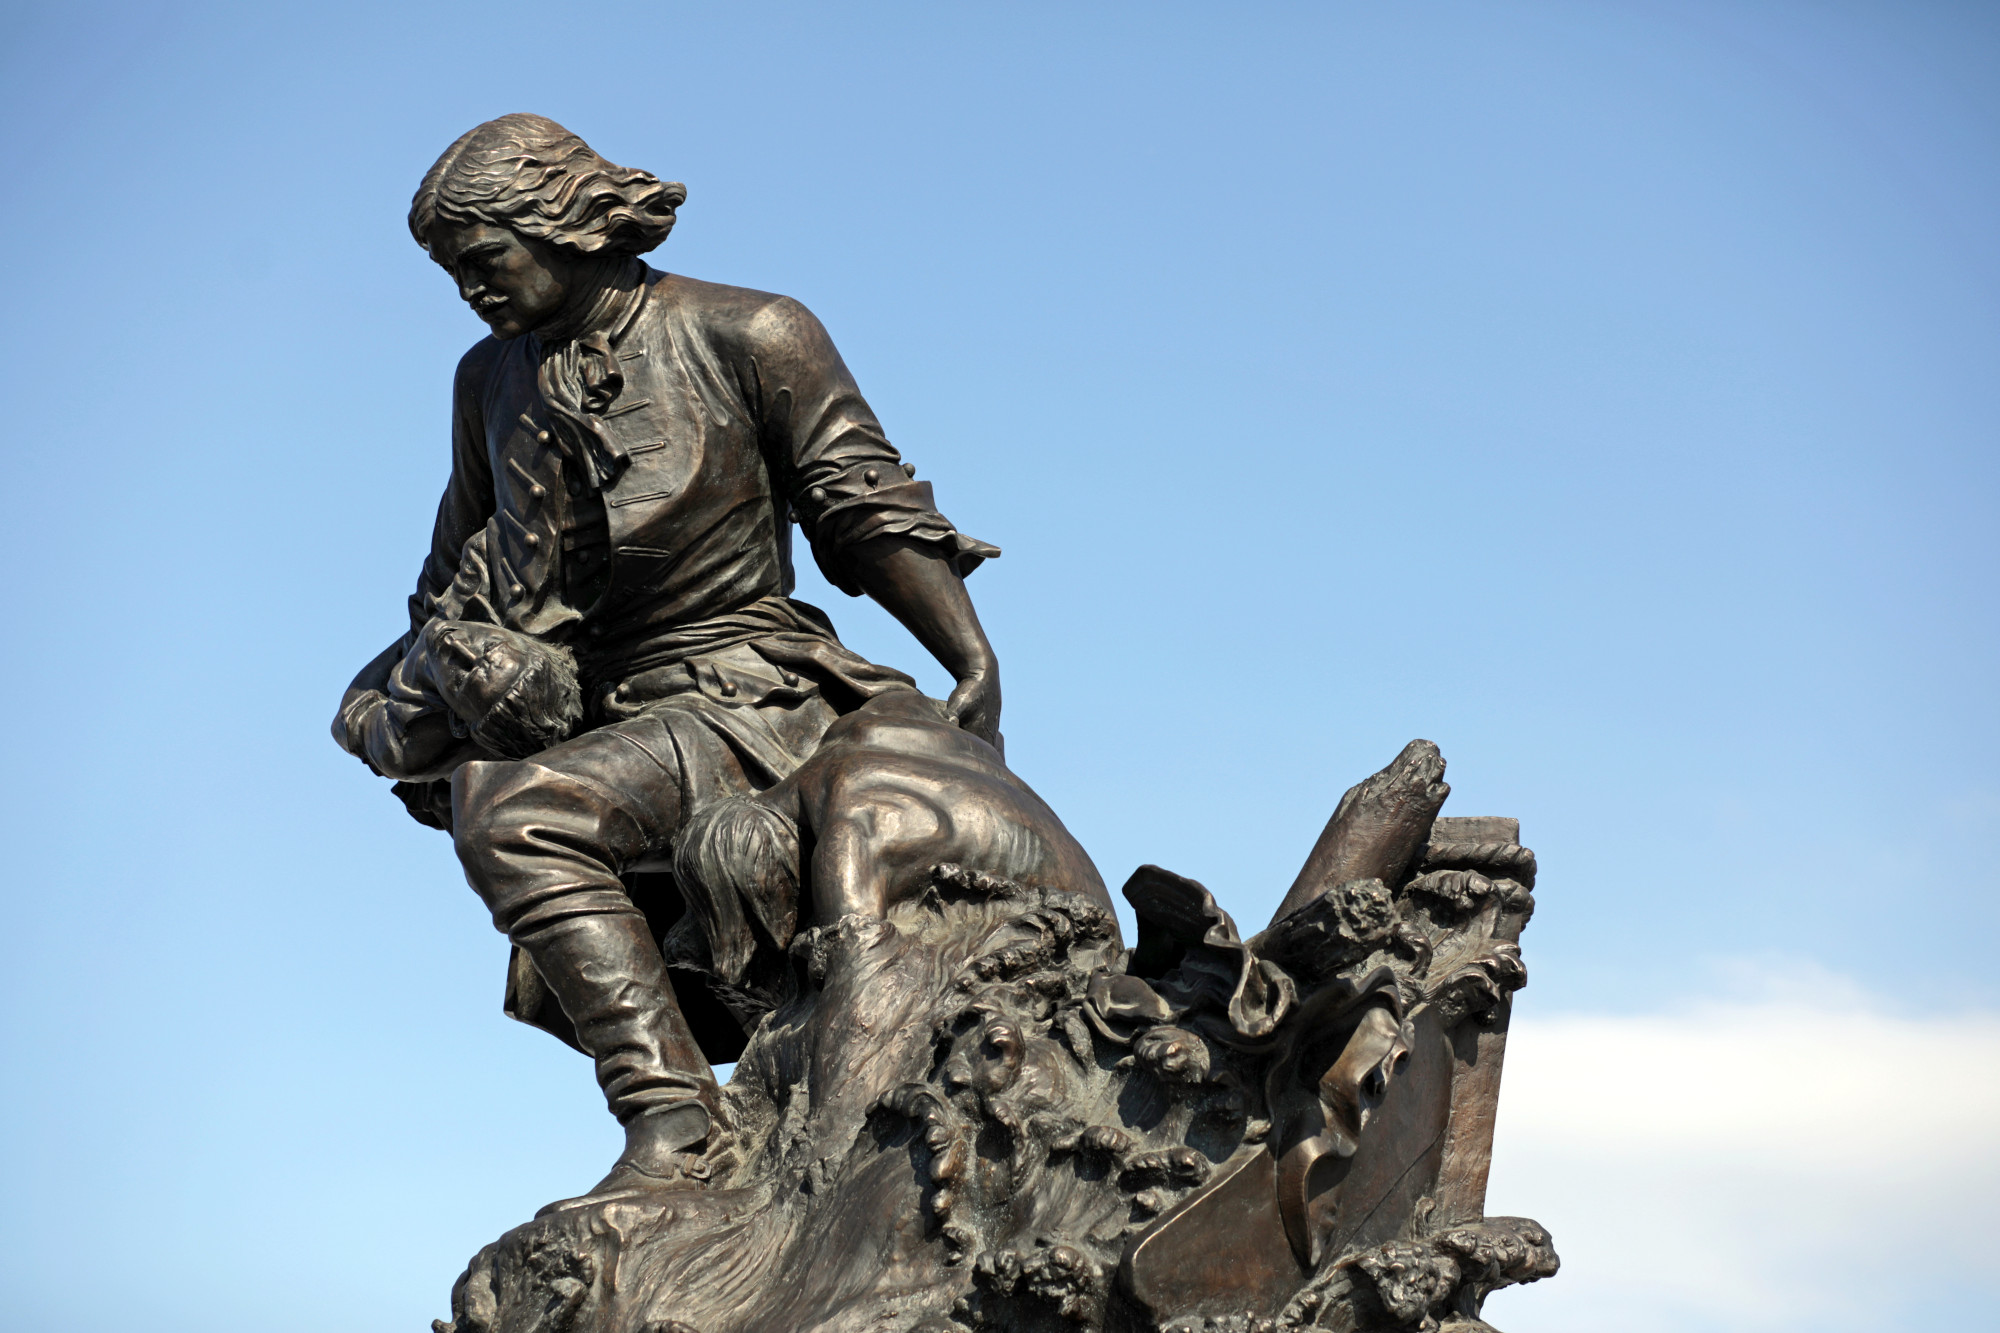 Памятник петру 1 шемякина в петербурге фото